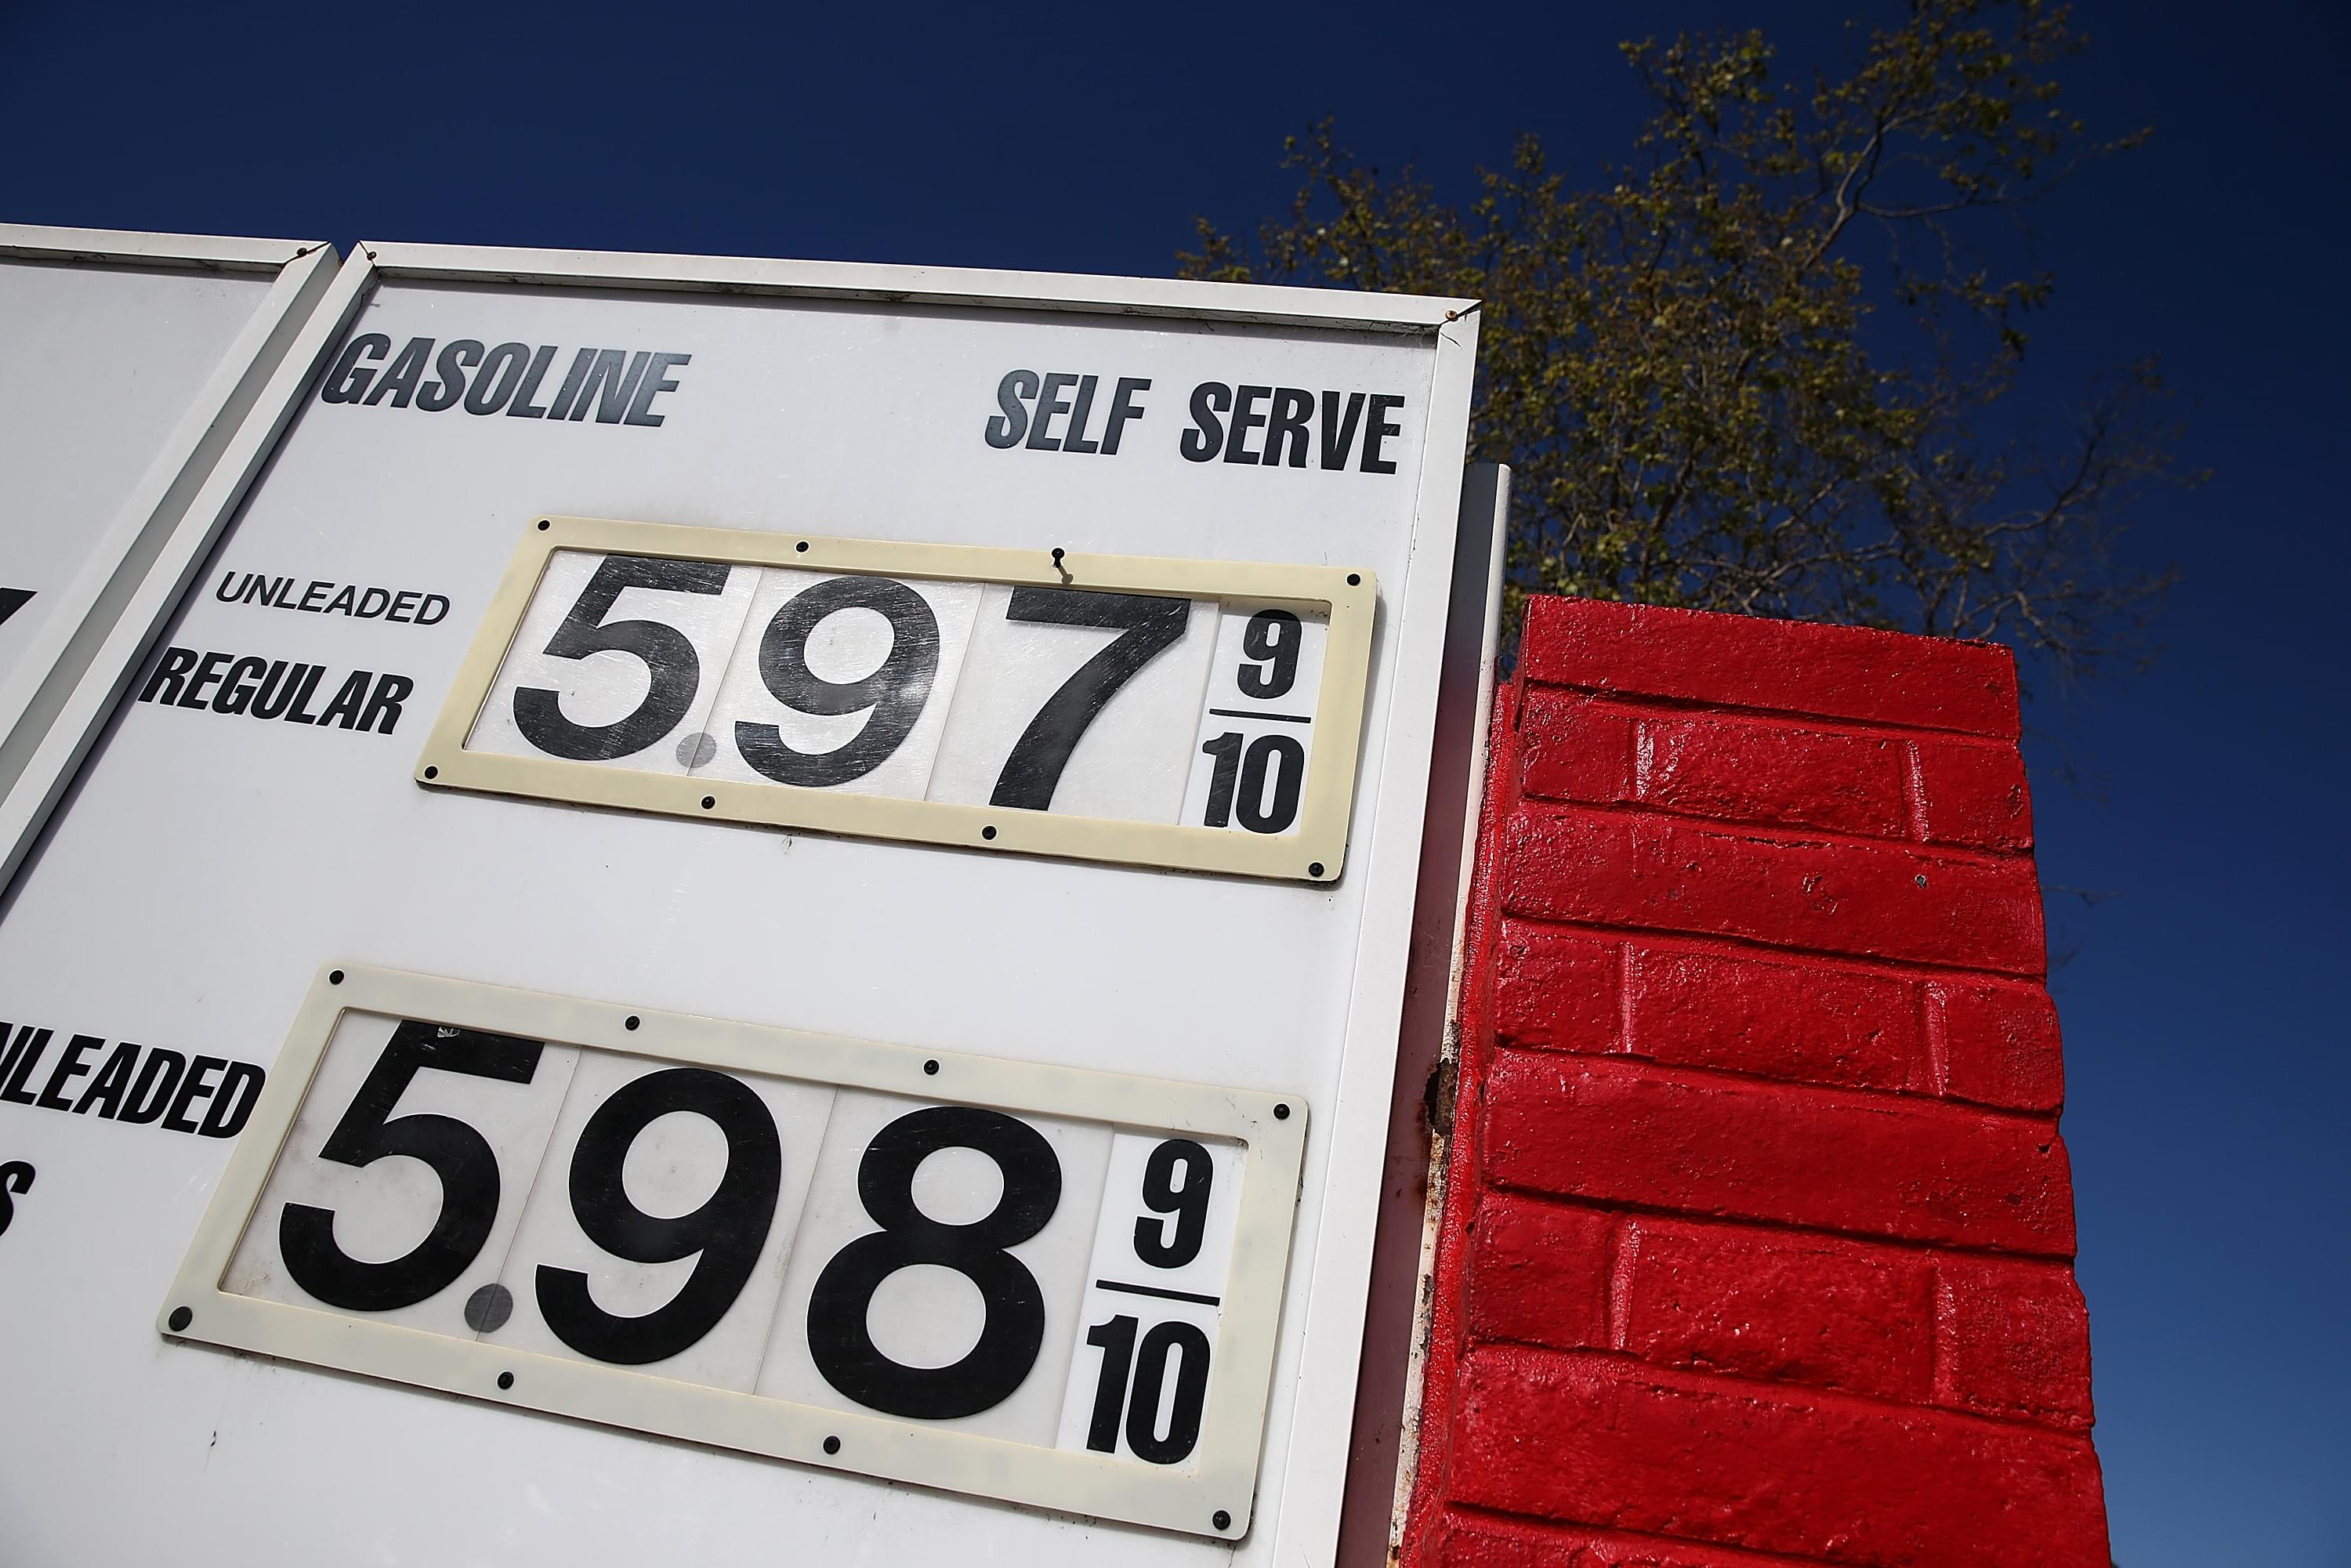 Sube el costo de gasolina en California